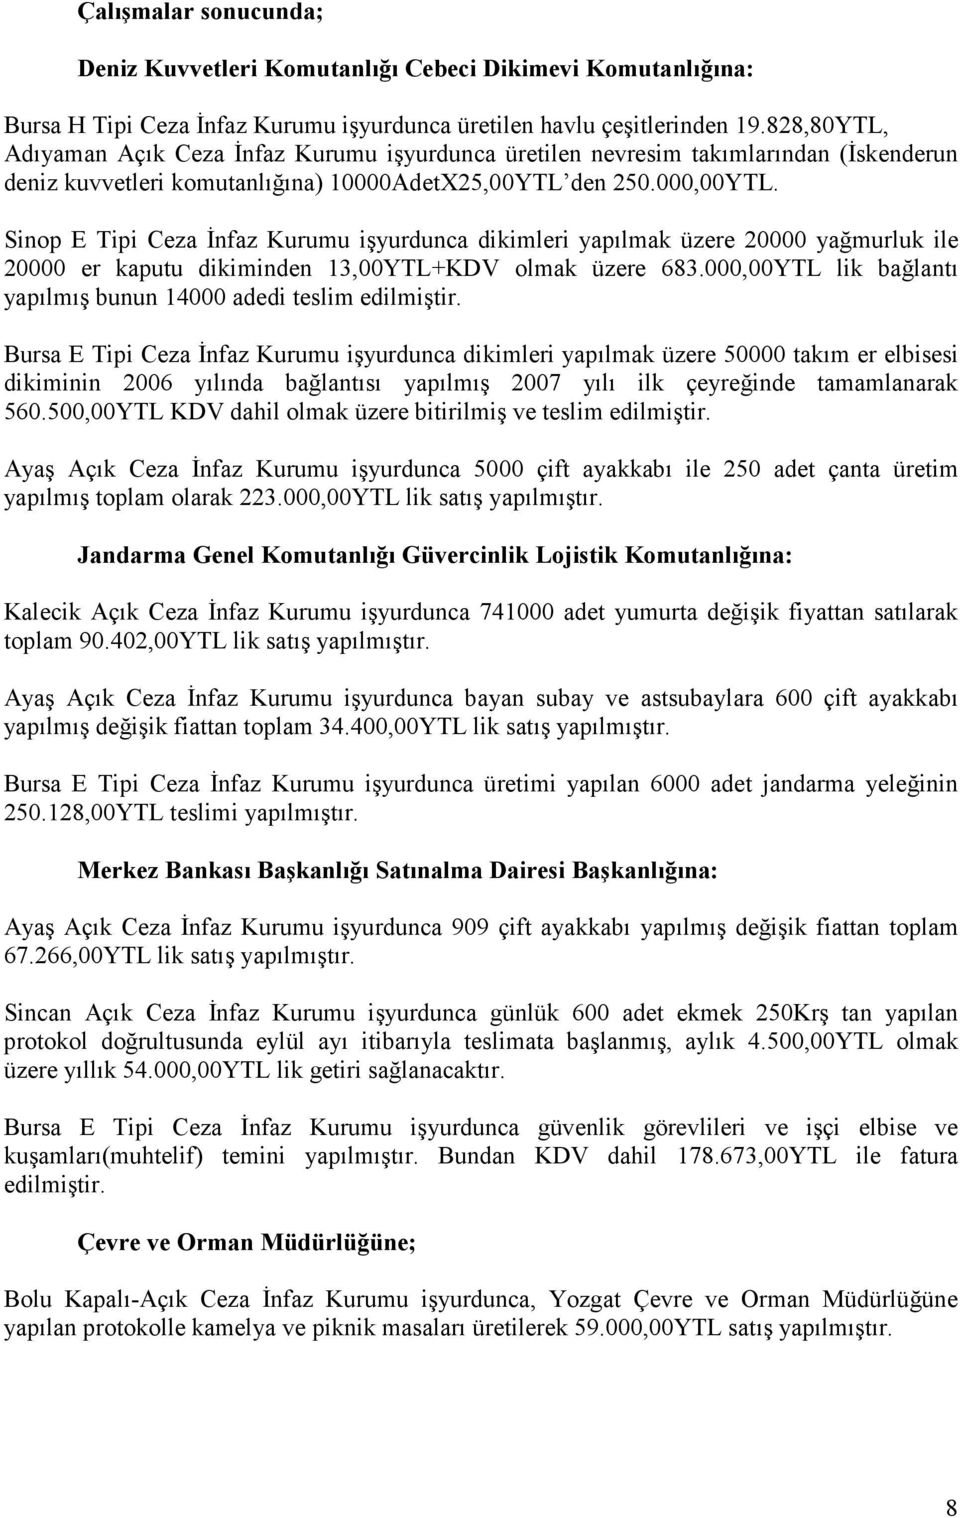 Sinop E Tipi Ceza Đnfaz Kurumu işyurdunca dikimleri yapılmak üzere 20000 yağmurluk ile 20000 er kaputu dikiminden 13,00YTL+KDV olmak üzere 683.